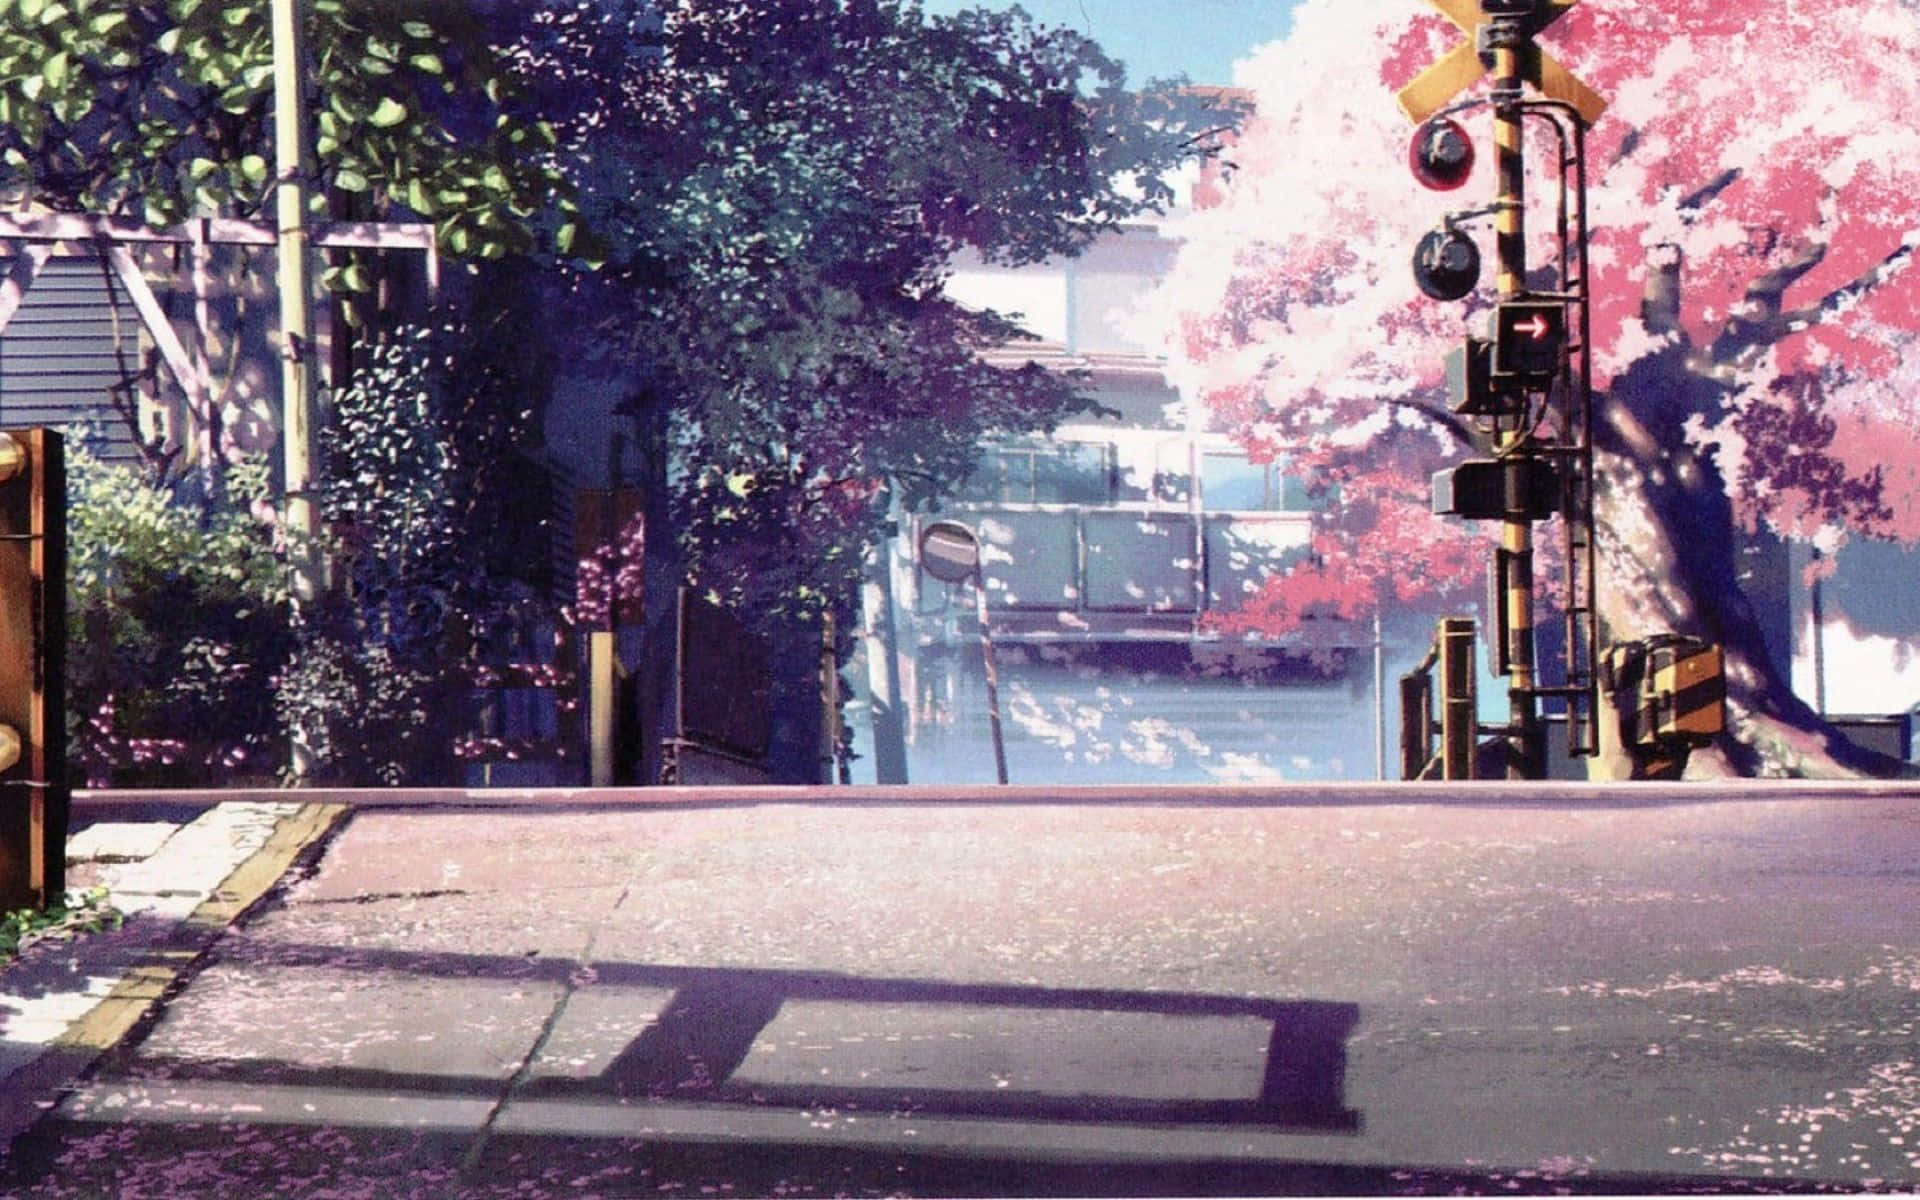 Anime Park Scenery Wallpaper